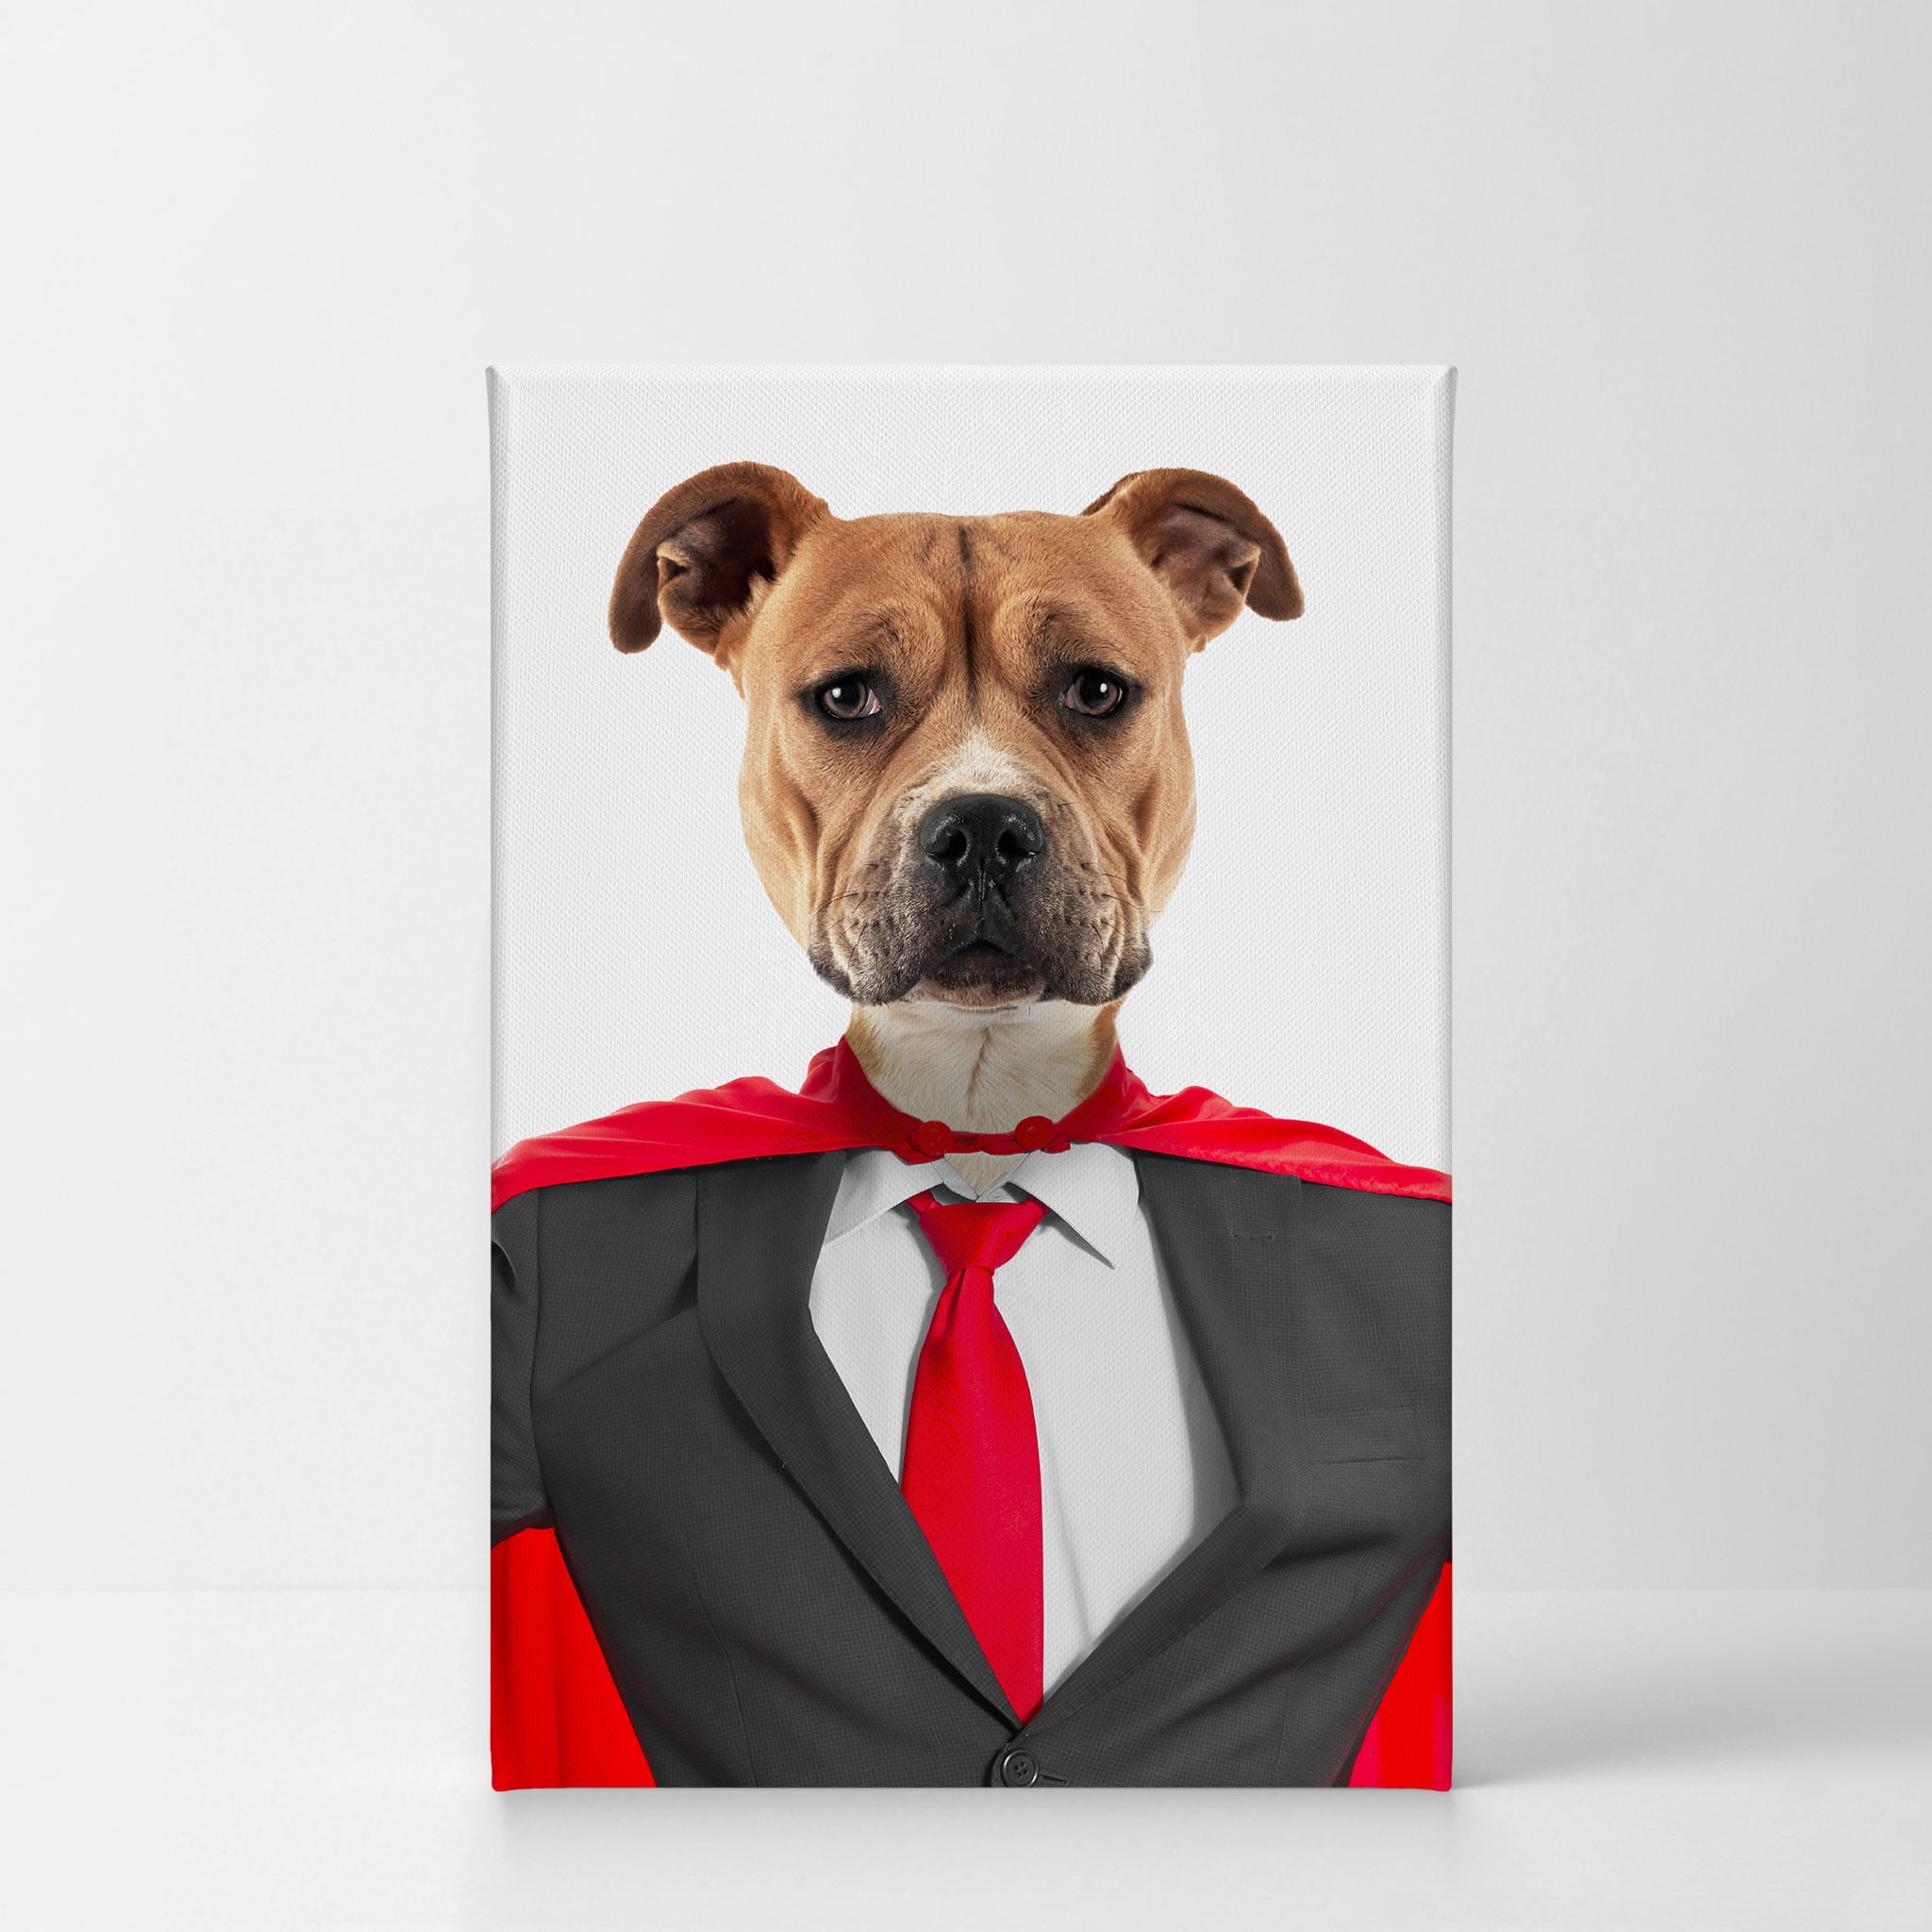 Staffy Dog Wooden Photo Frame 6 x 4 Landscape or Portrait Dog Lover Gift 